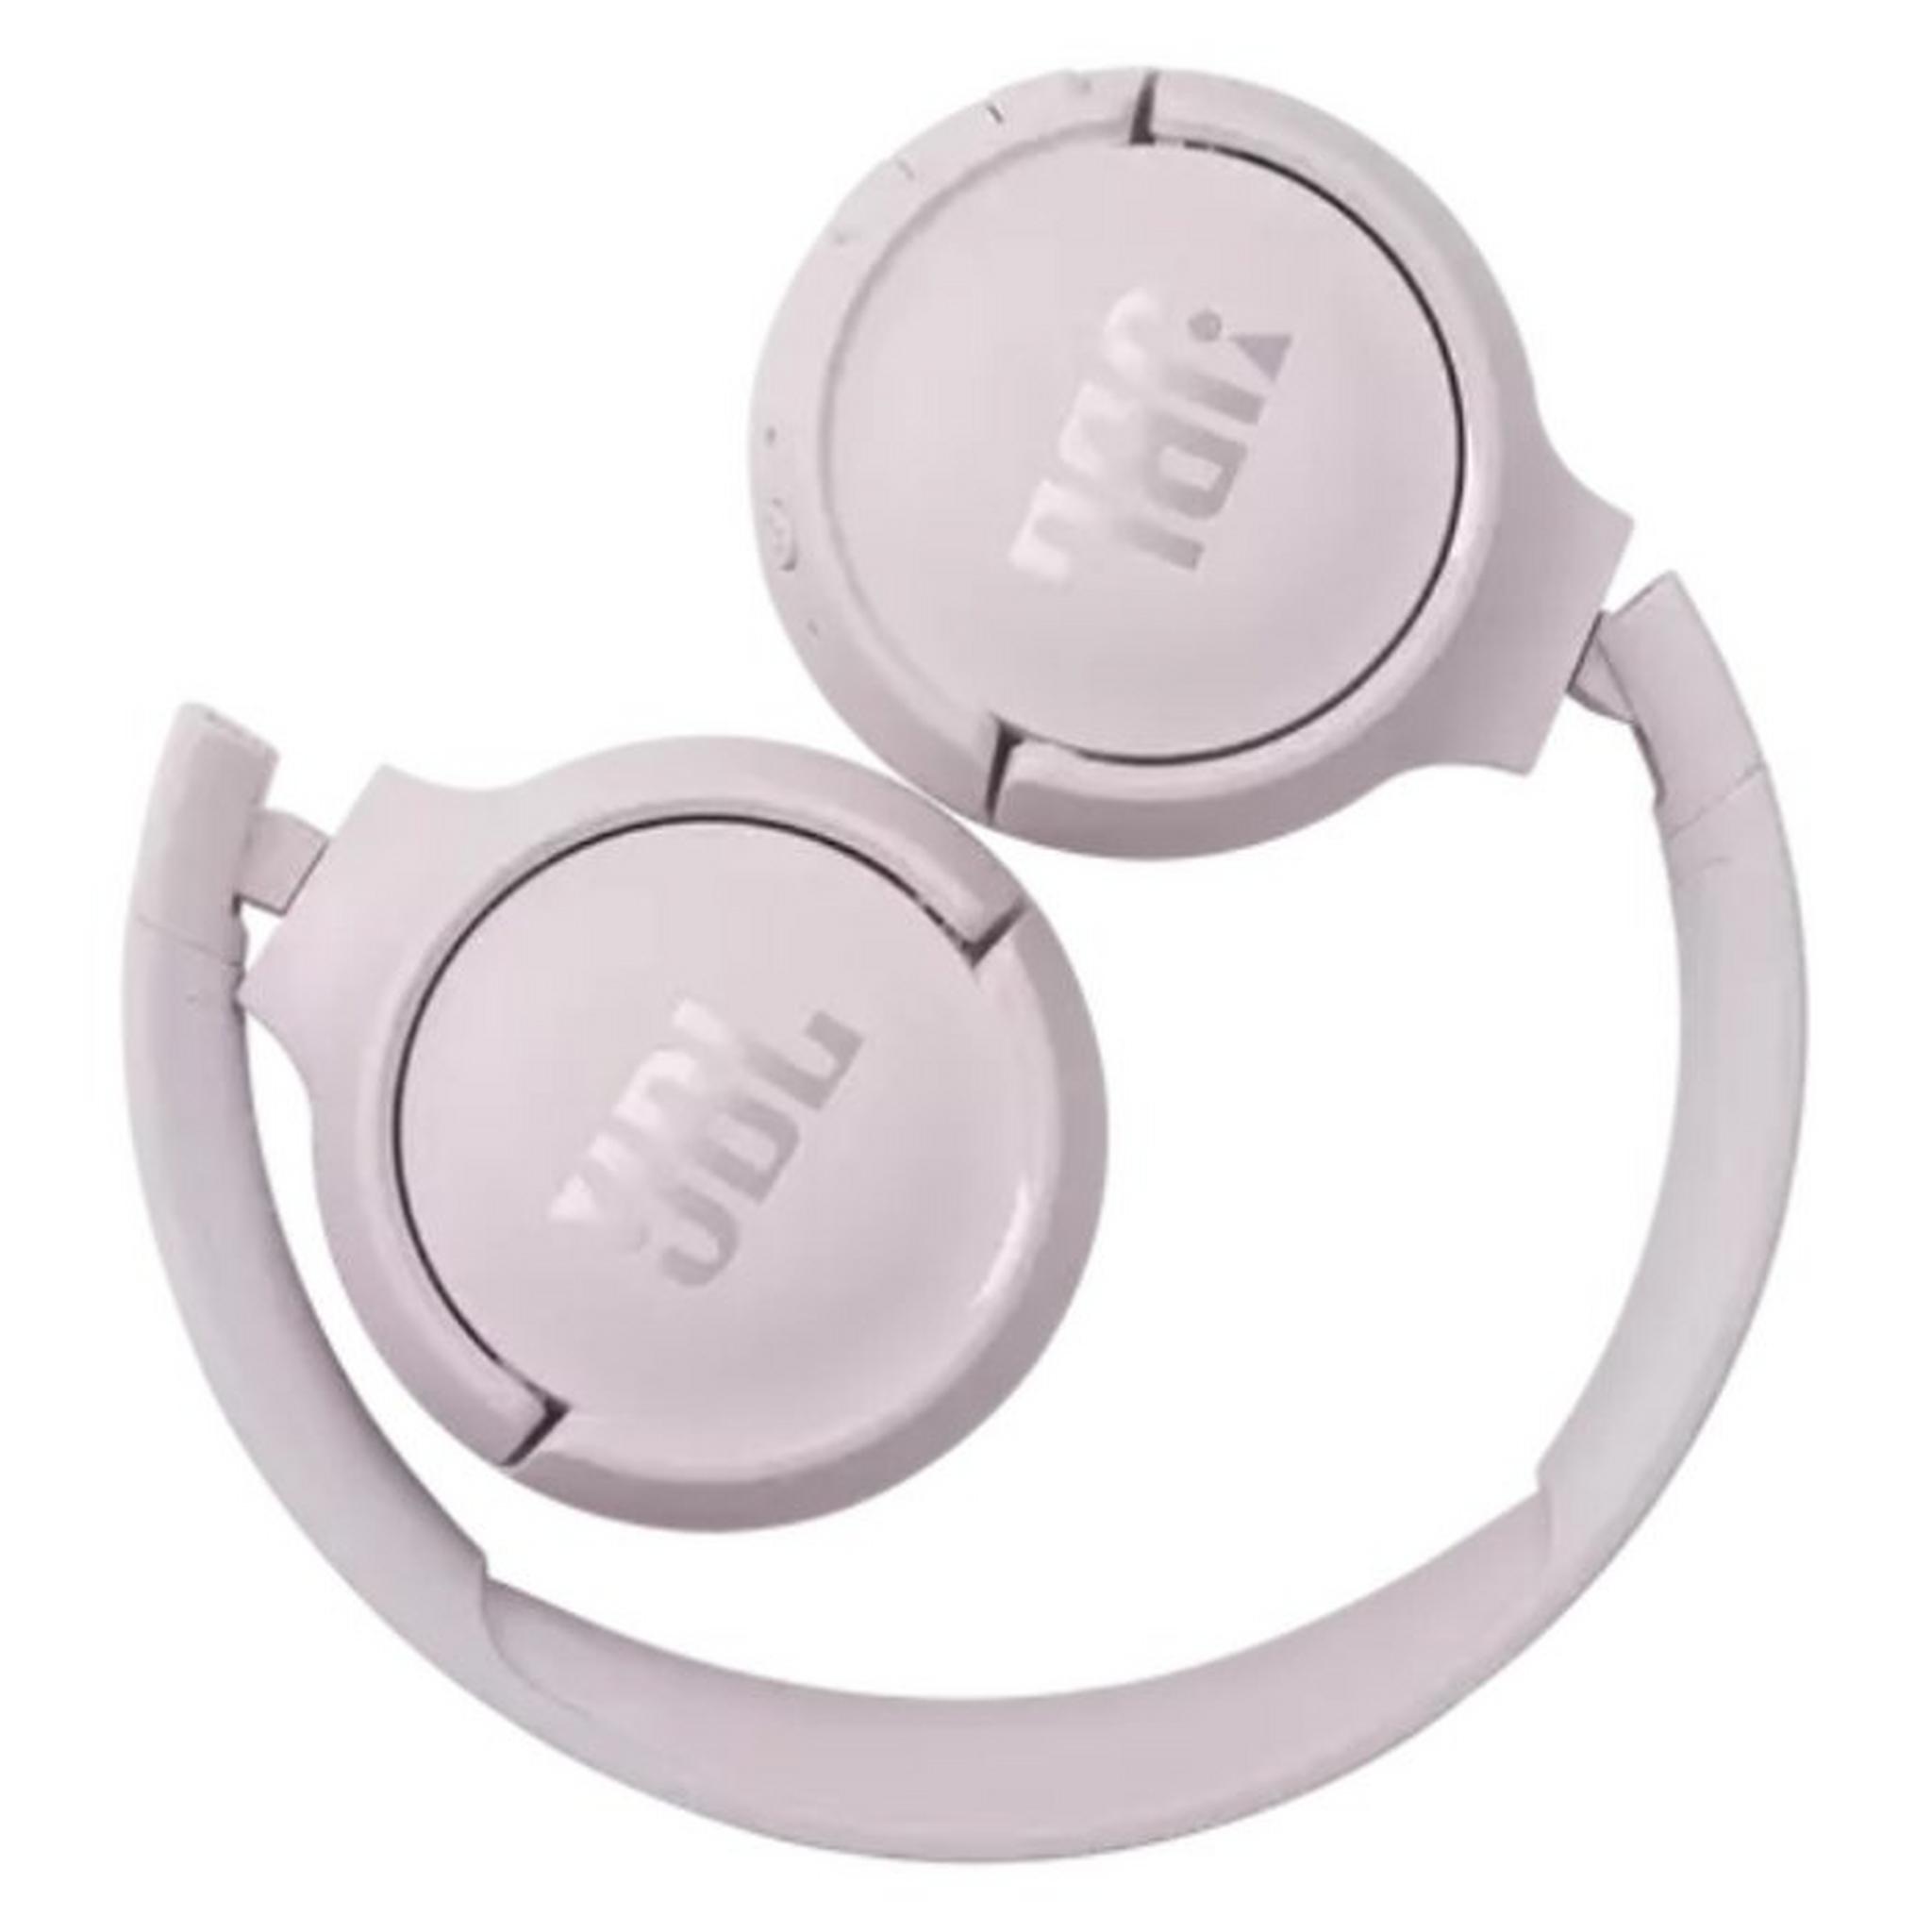 JBL Tune 510BT Wireless On-Ear Headphones -Rose